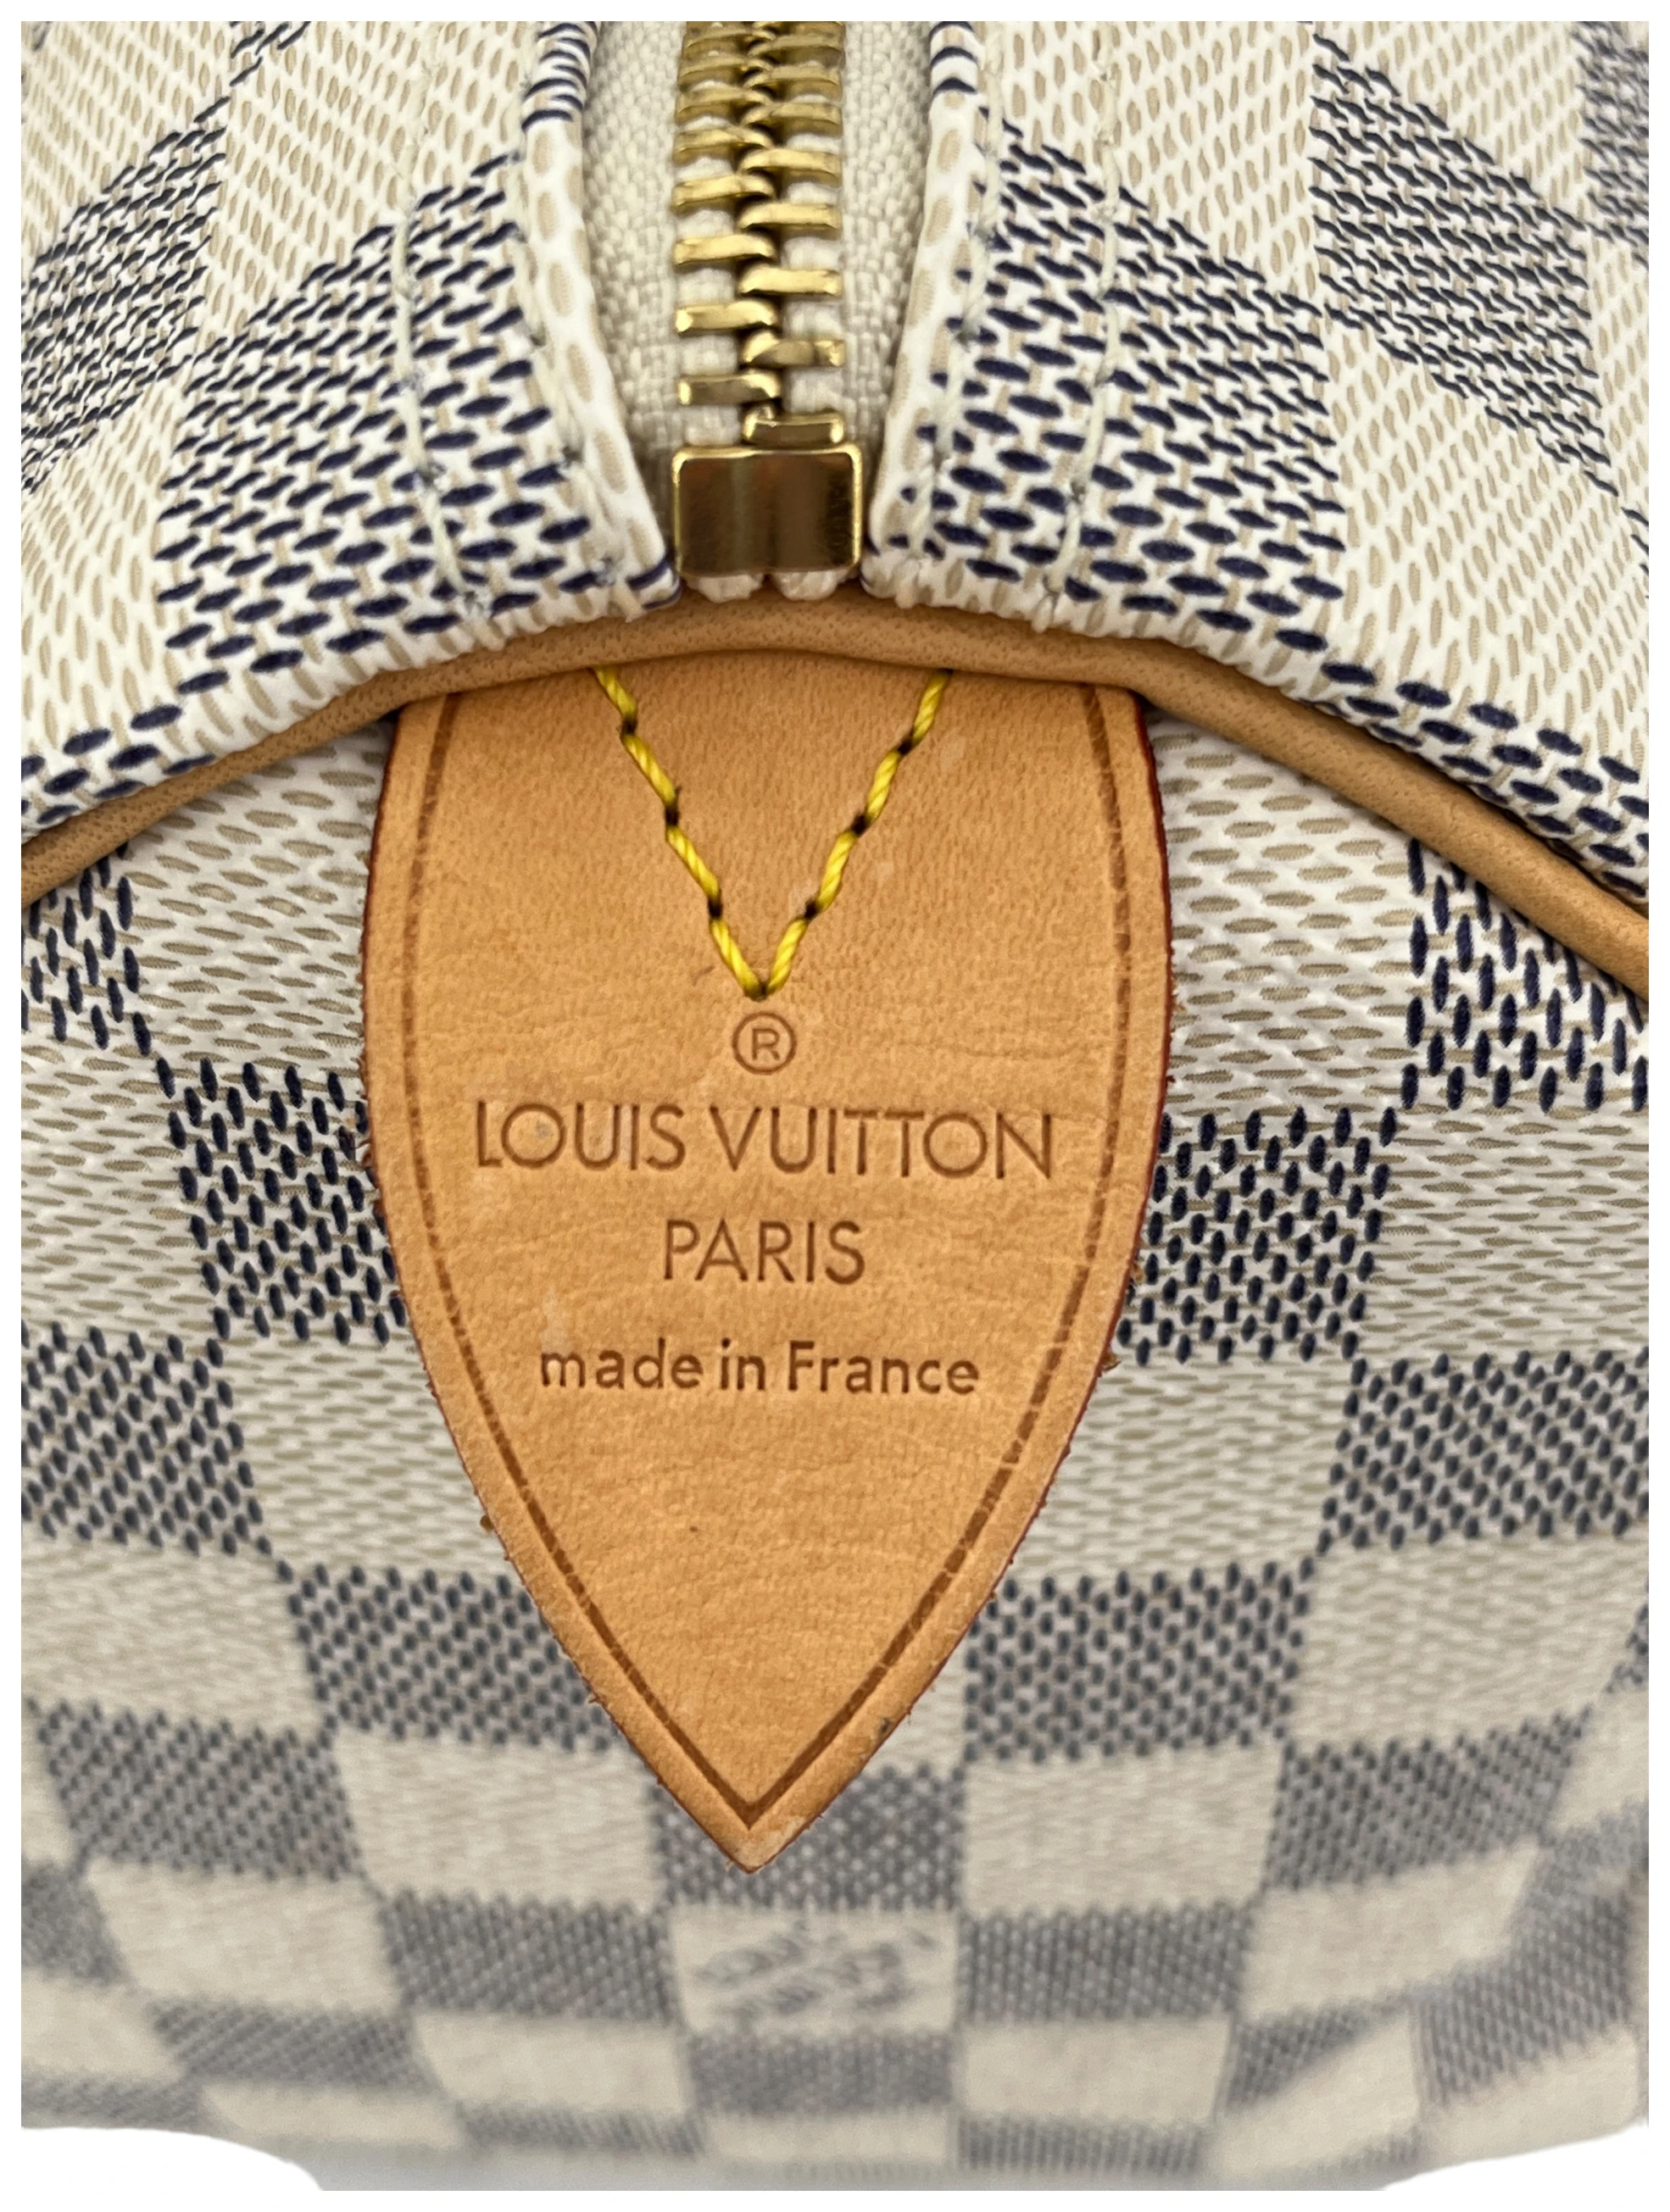 NEW! Genuine Louis Vuitton Damier Azur Canvas N41371 SPEEDY 25